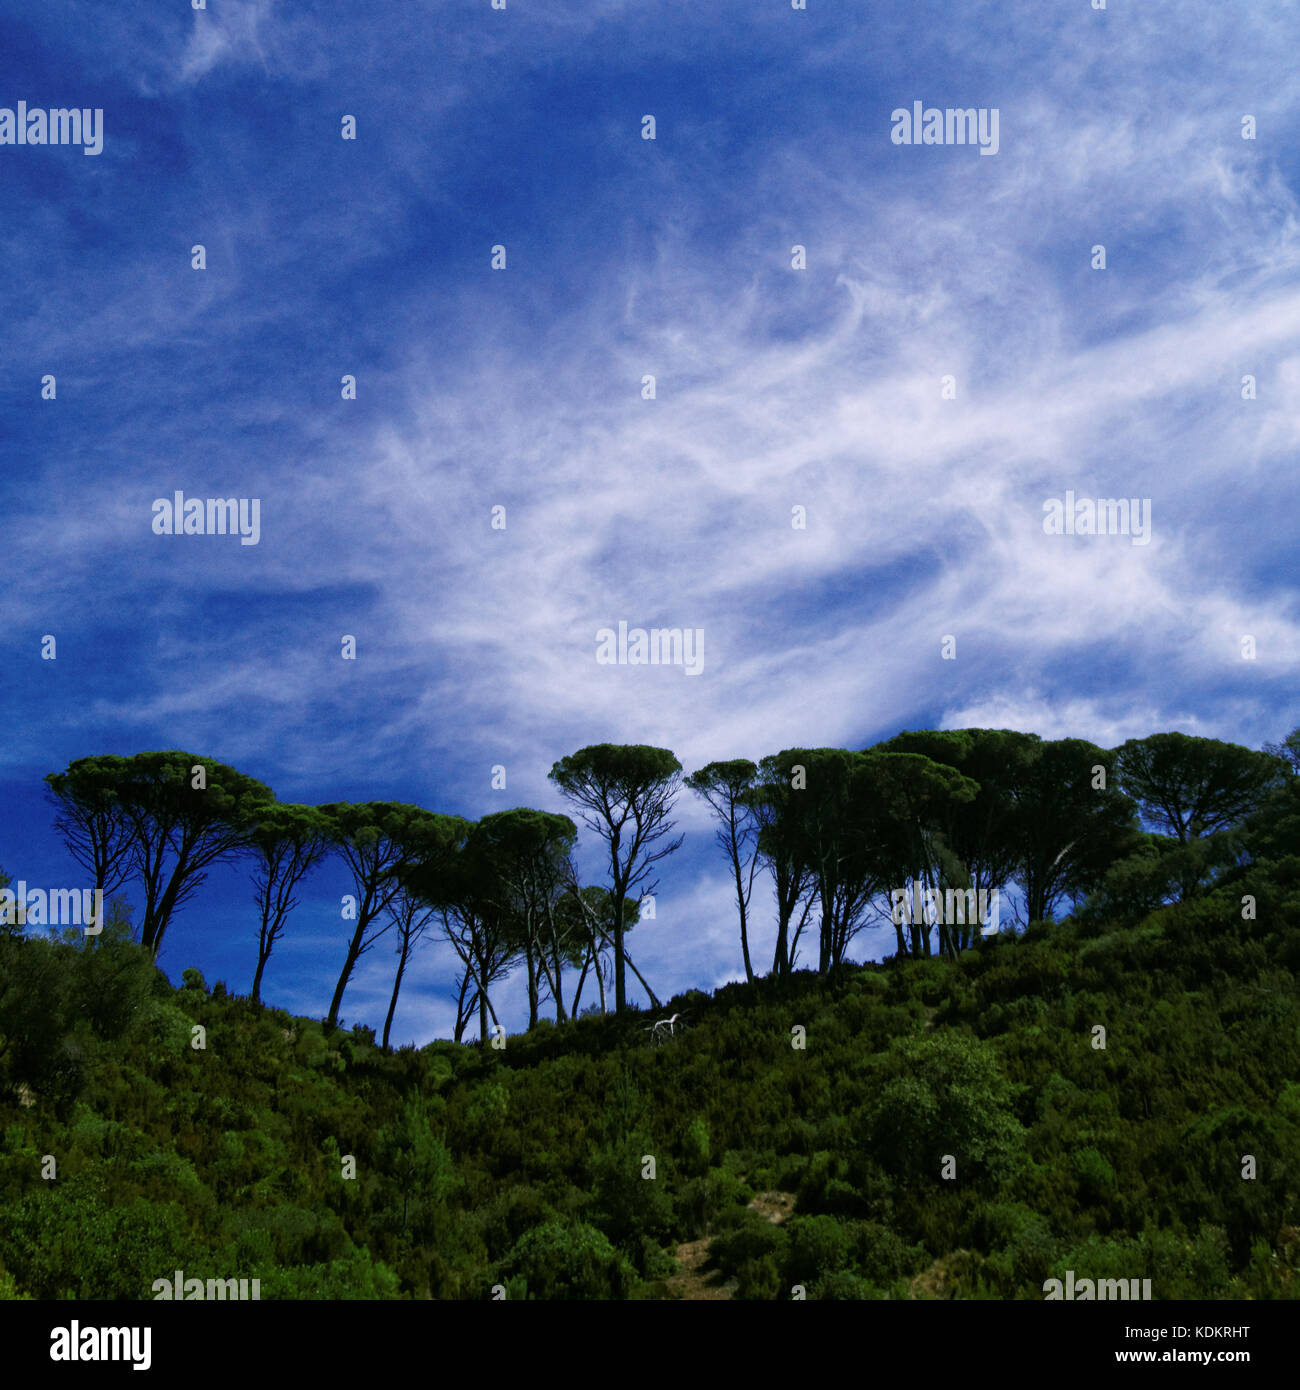 Grupo de árboles y cielo con nubes Foto de stock